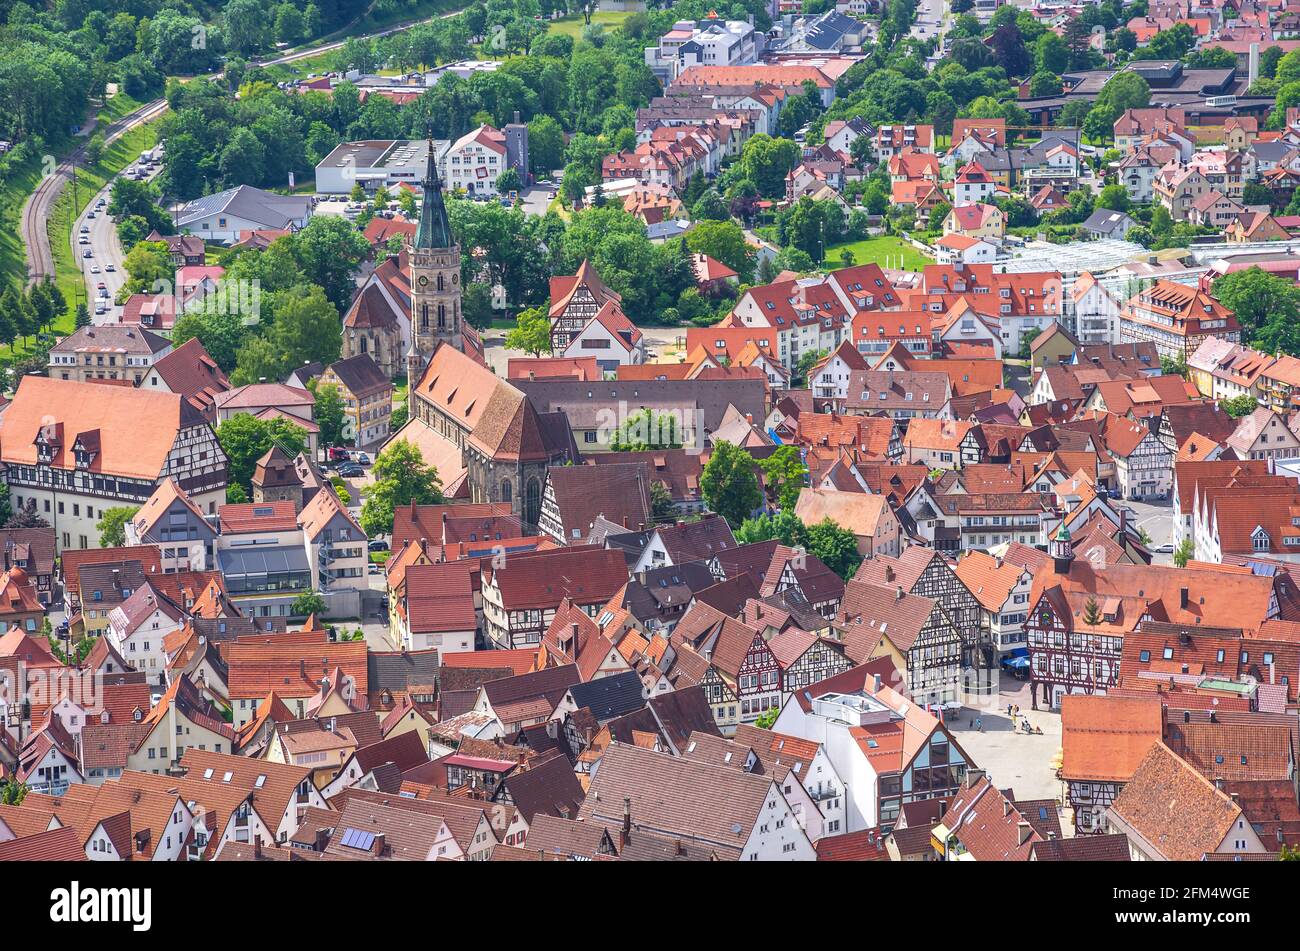 Bad Urach, Baden-Württemberg, Deutschland - 6. Juni 2014: Blick von oben auf die Kleinstadt Bad Urach am Fuße der Schwäbischen Alb Stockfoto